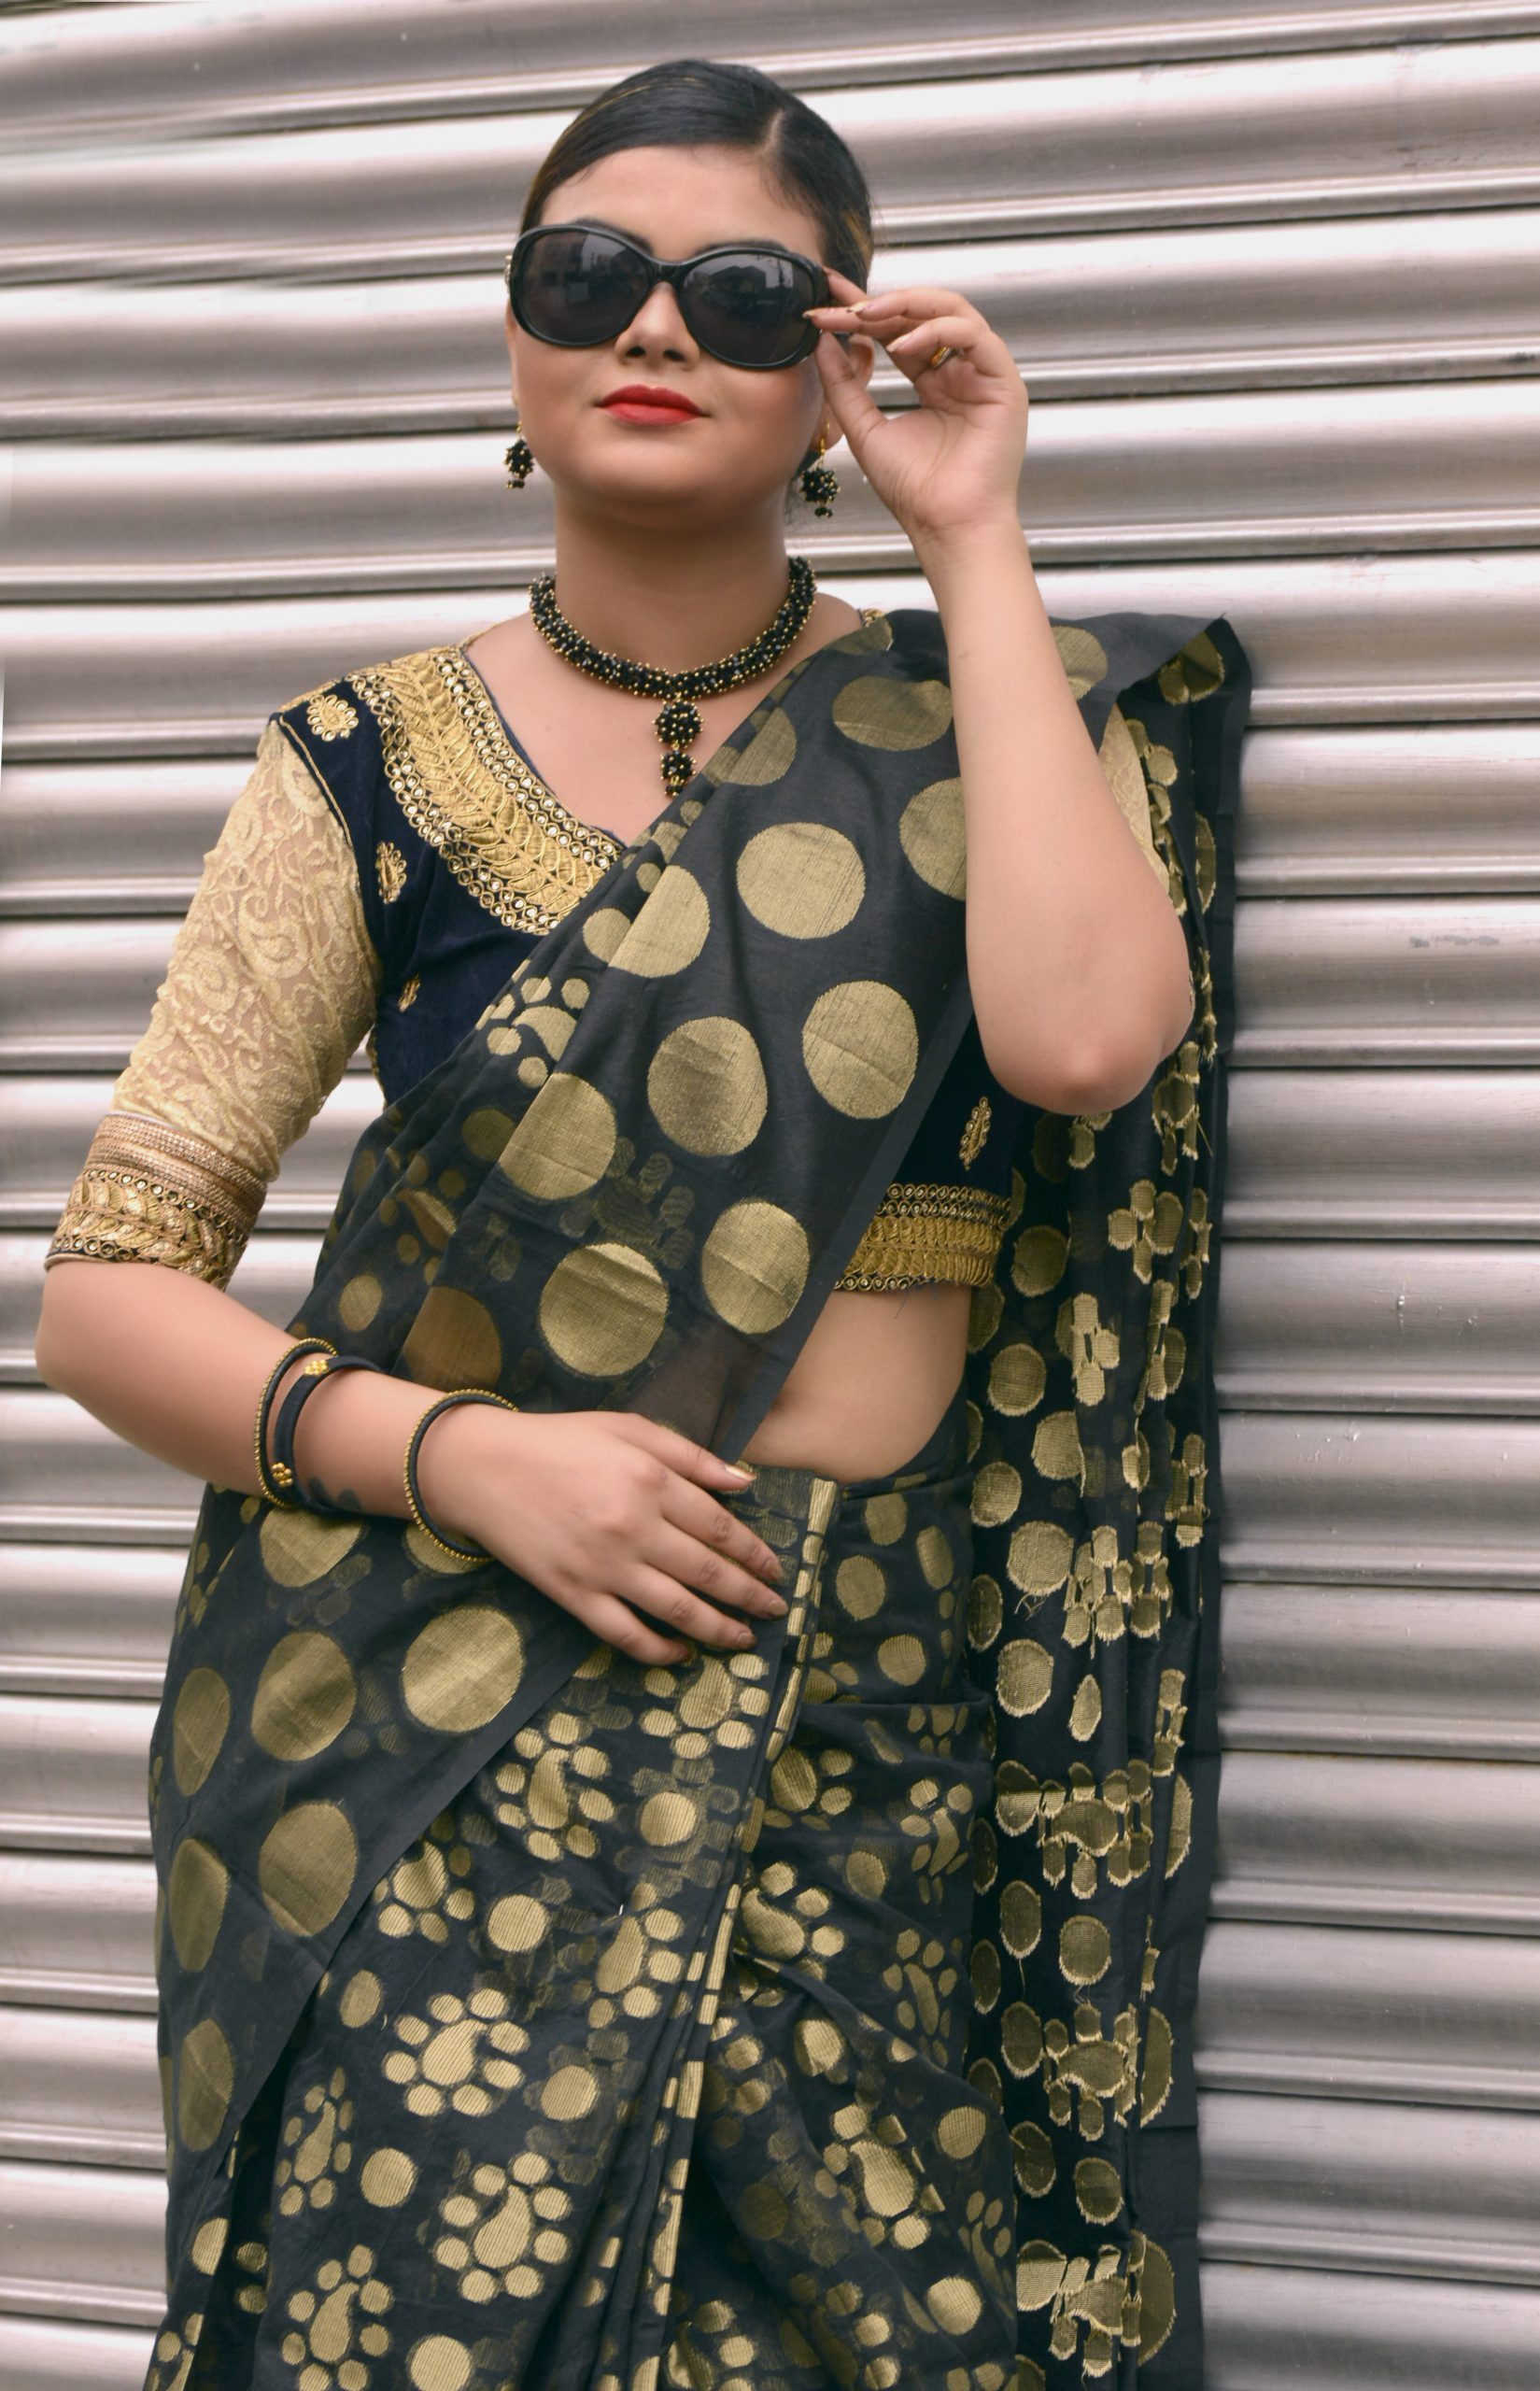 A woman in sari